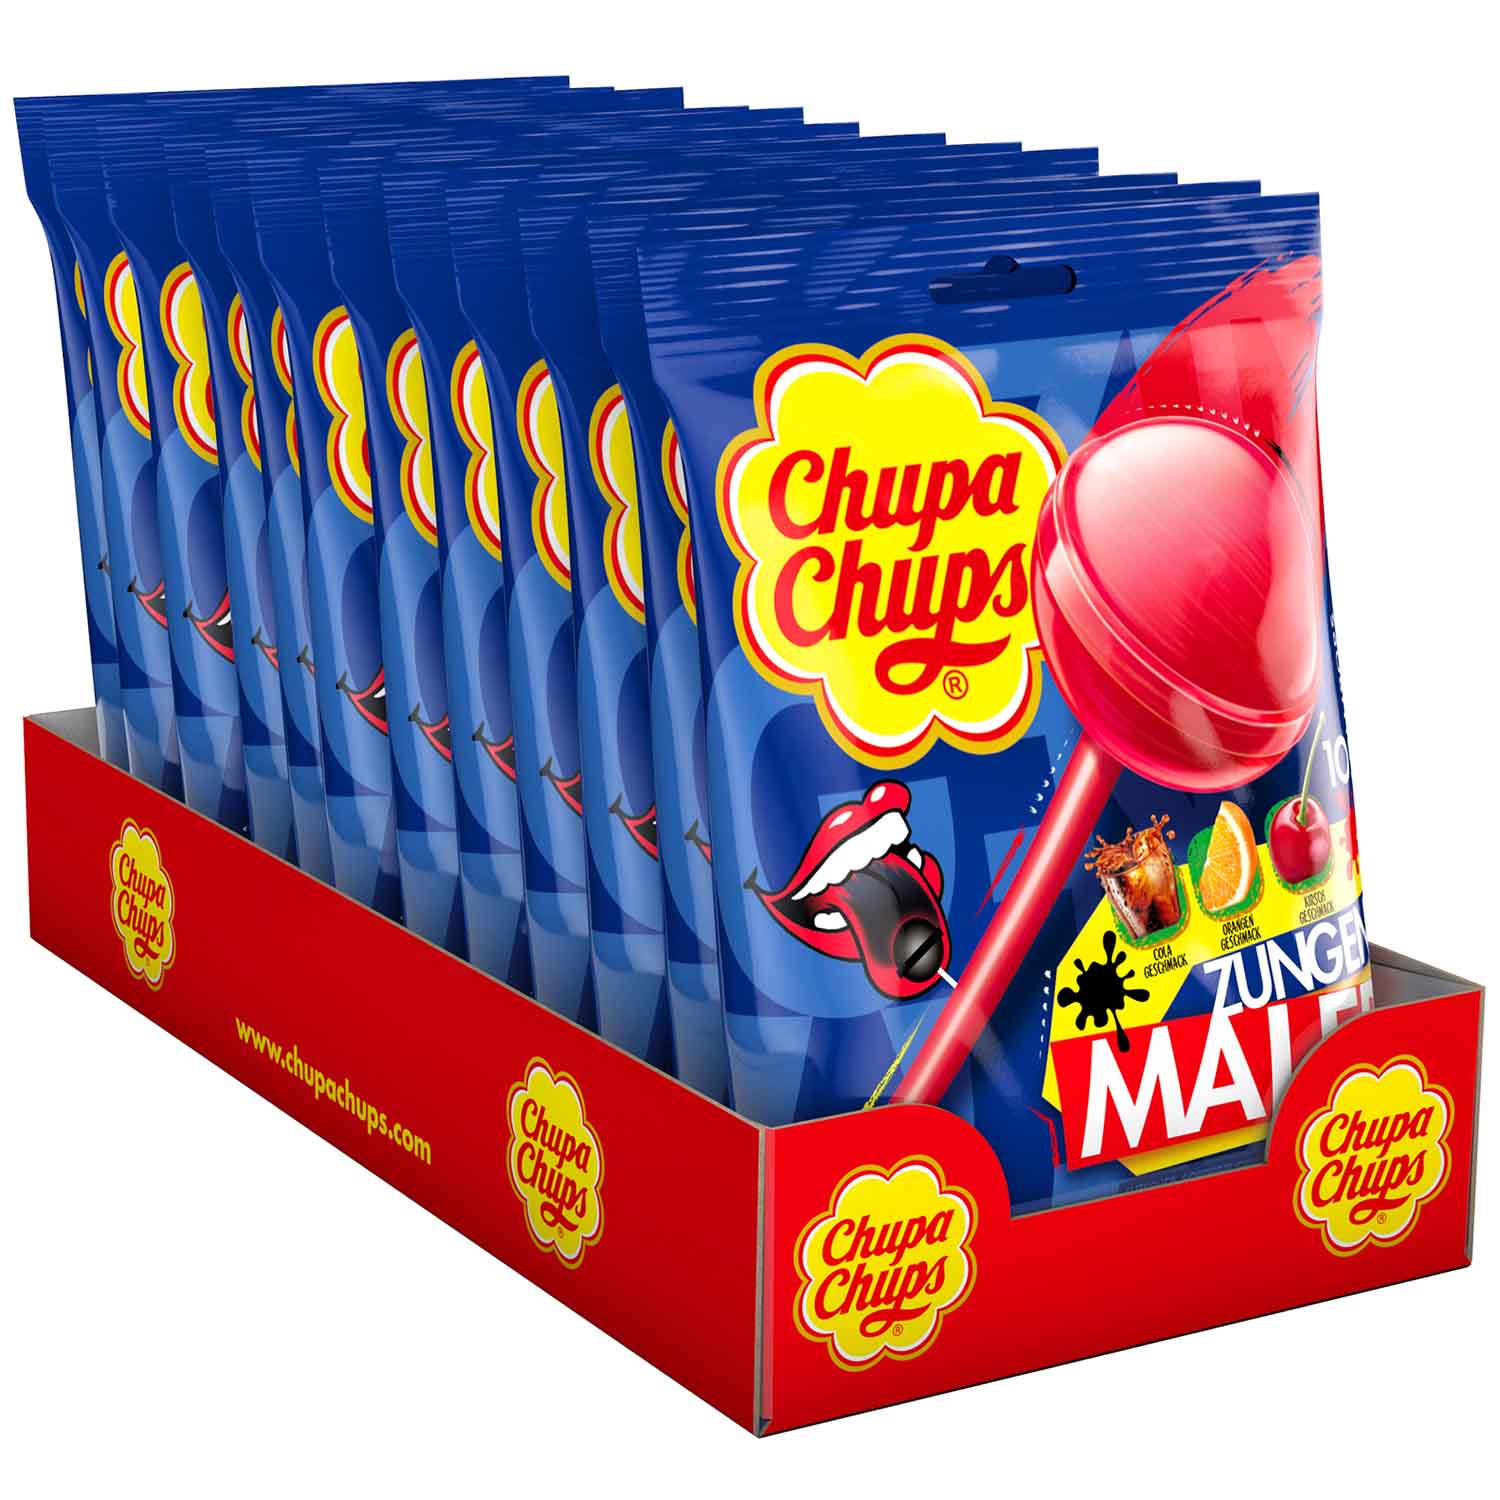 Chupa Chups Zungenmaler